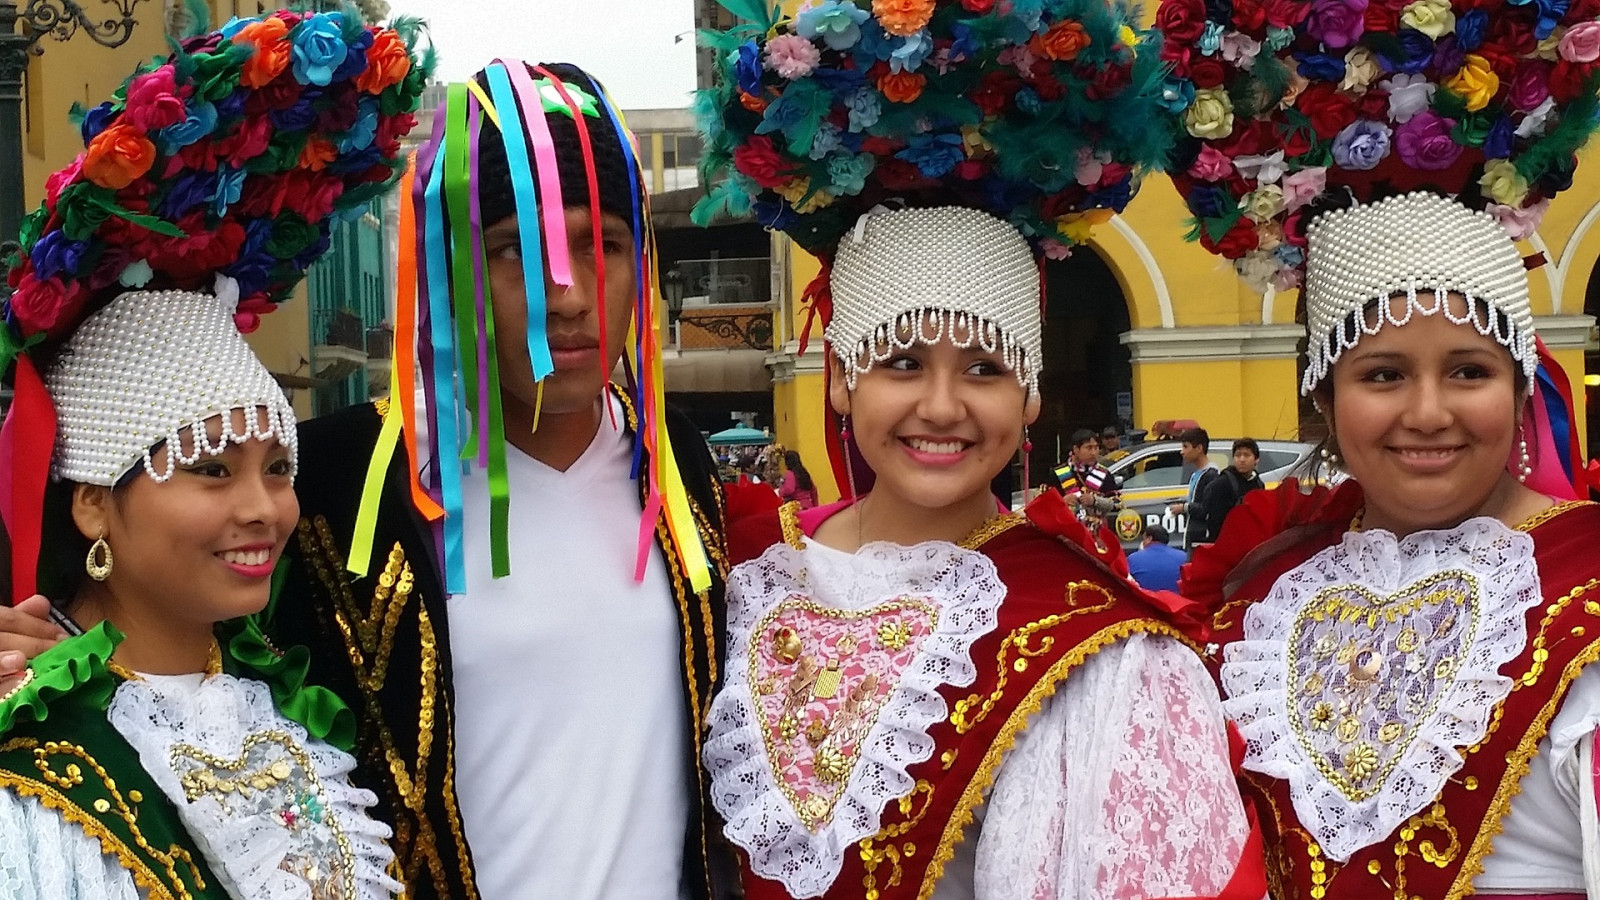 Na zdjęciu znajdują się cztery osoby - trzy kobiety i jeden mężczyzna. Na głowach mają kolorowe wianki. Ubrani są w kolorowe stroje ludowe - peruwiańskie. 